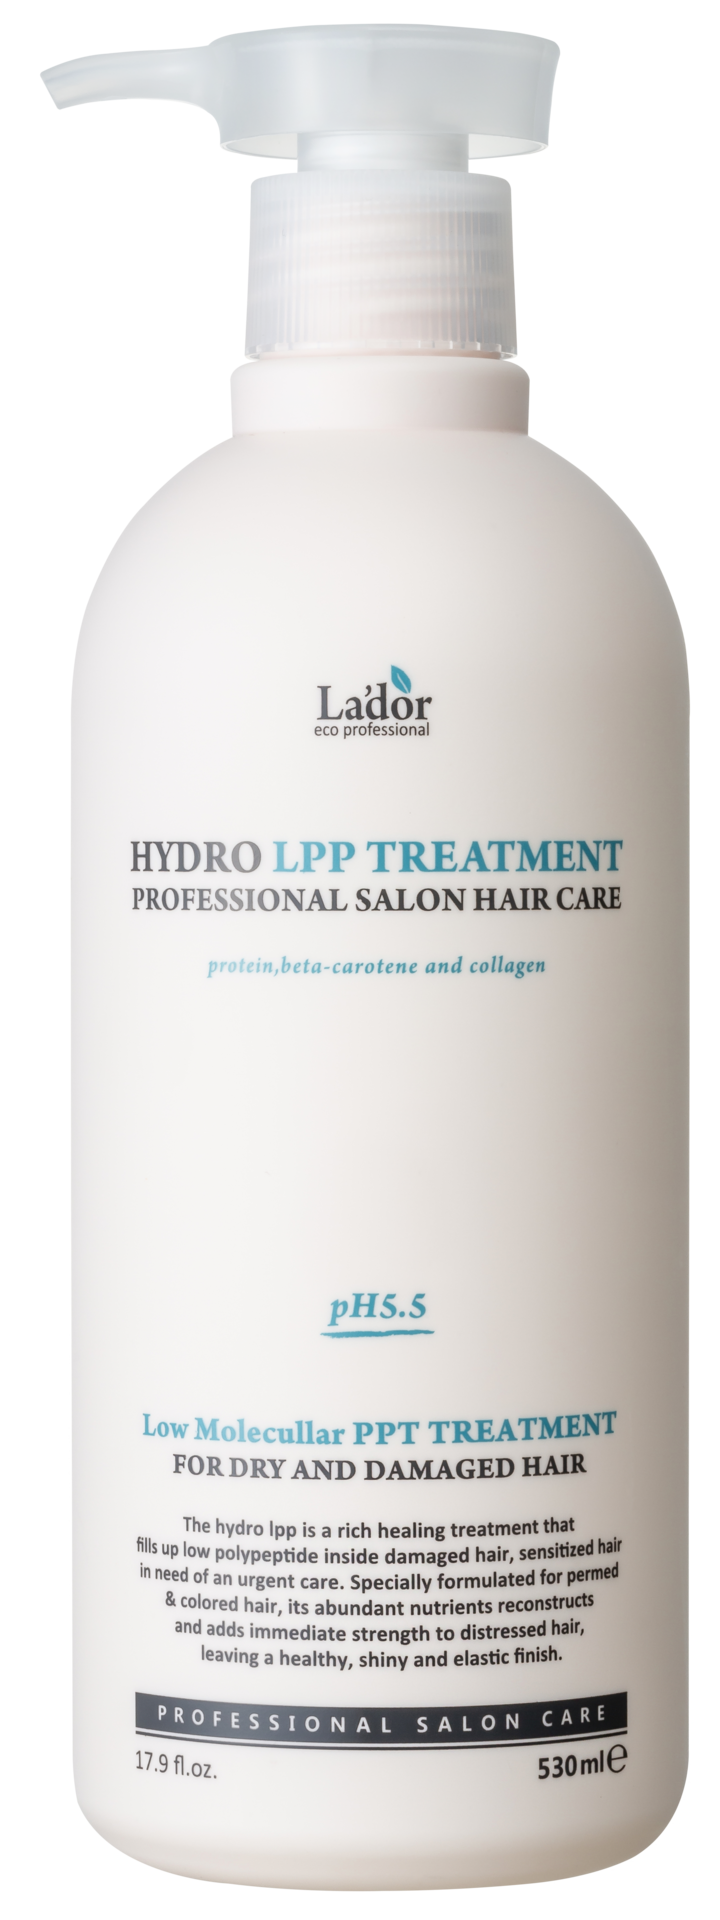 La'dor Hydro Lpp Treatment